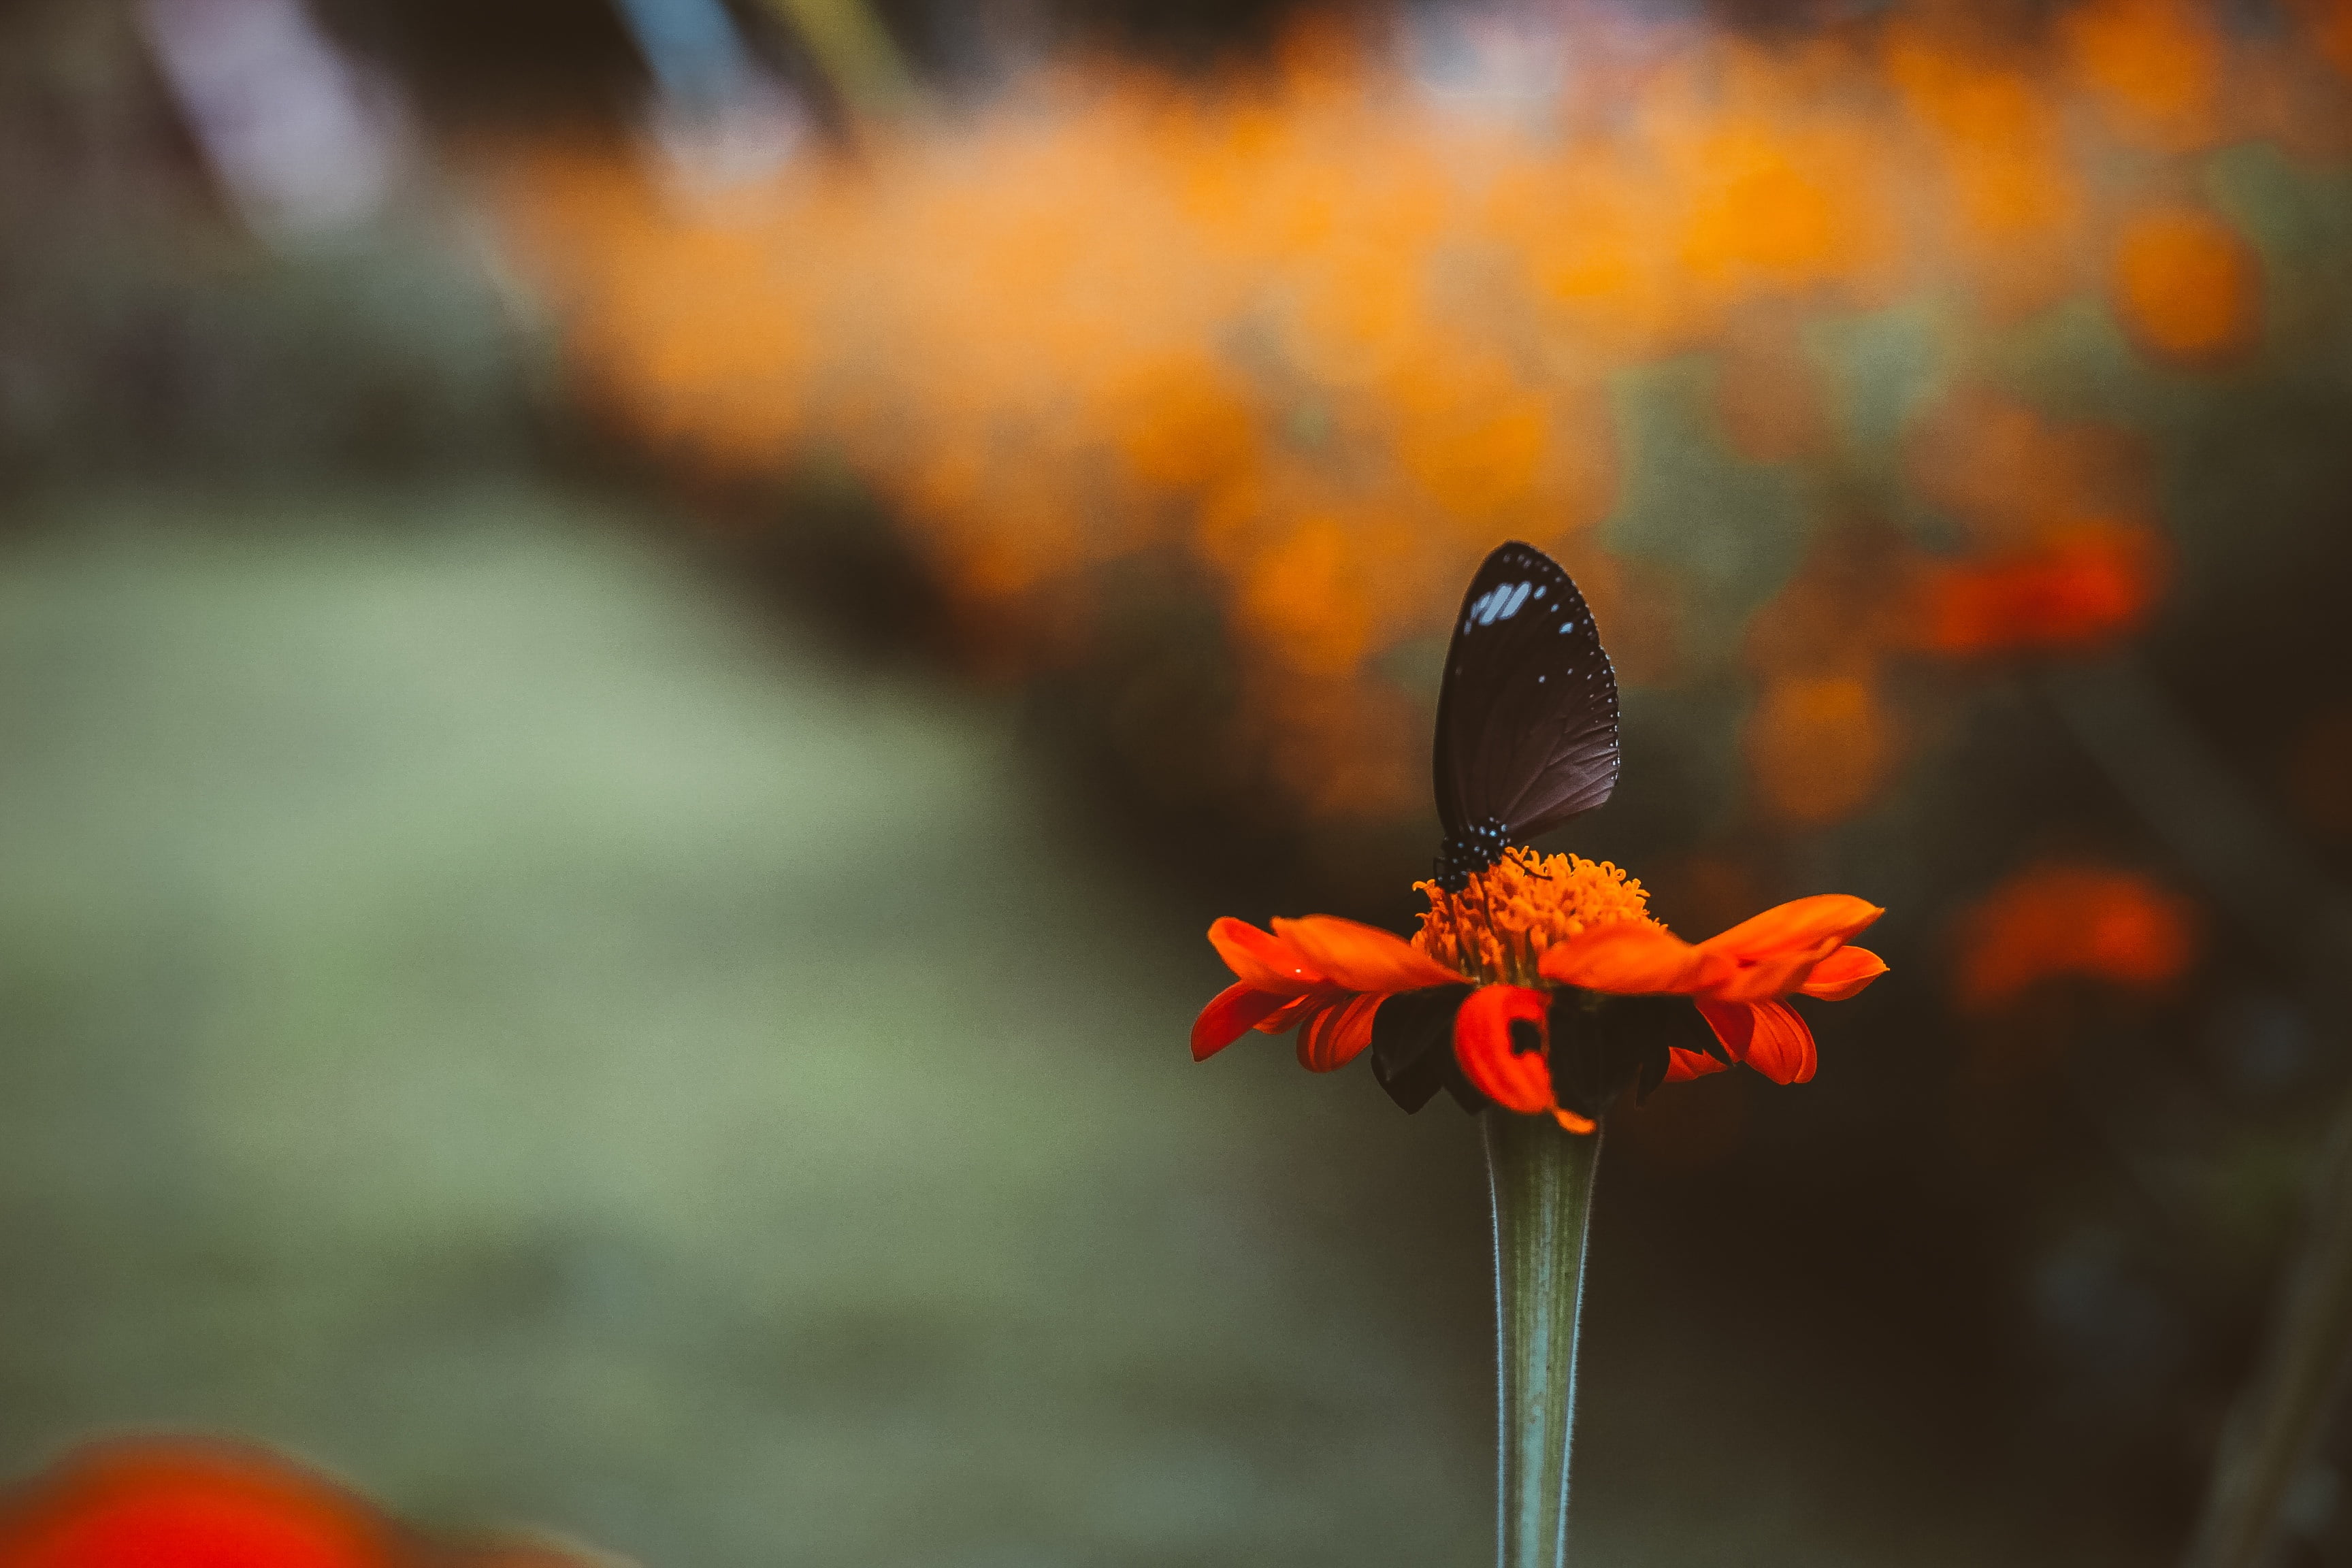 一只黑色蝴蝶坐在一朵橙色花朵上